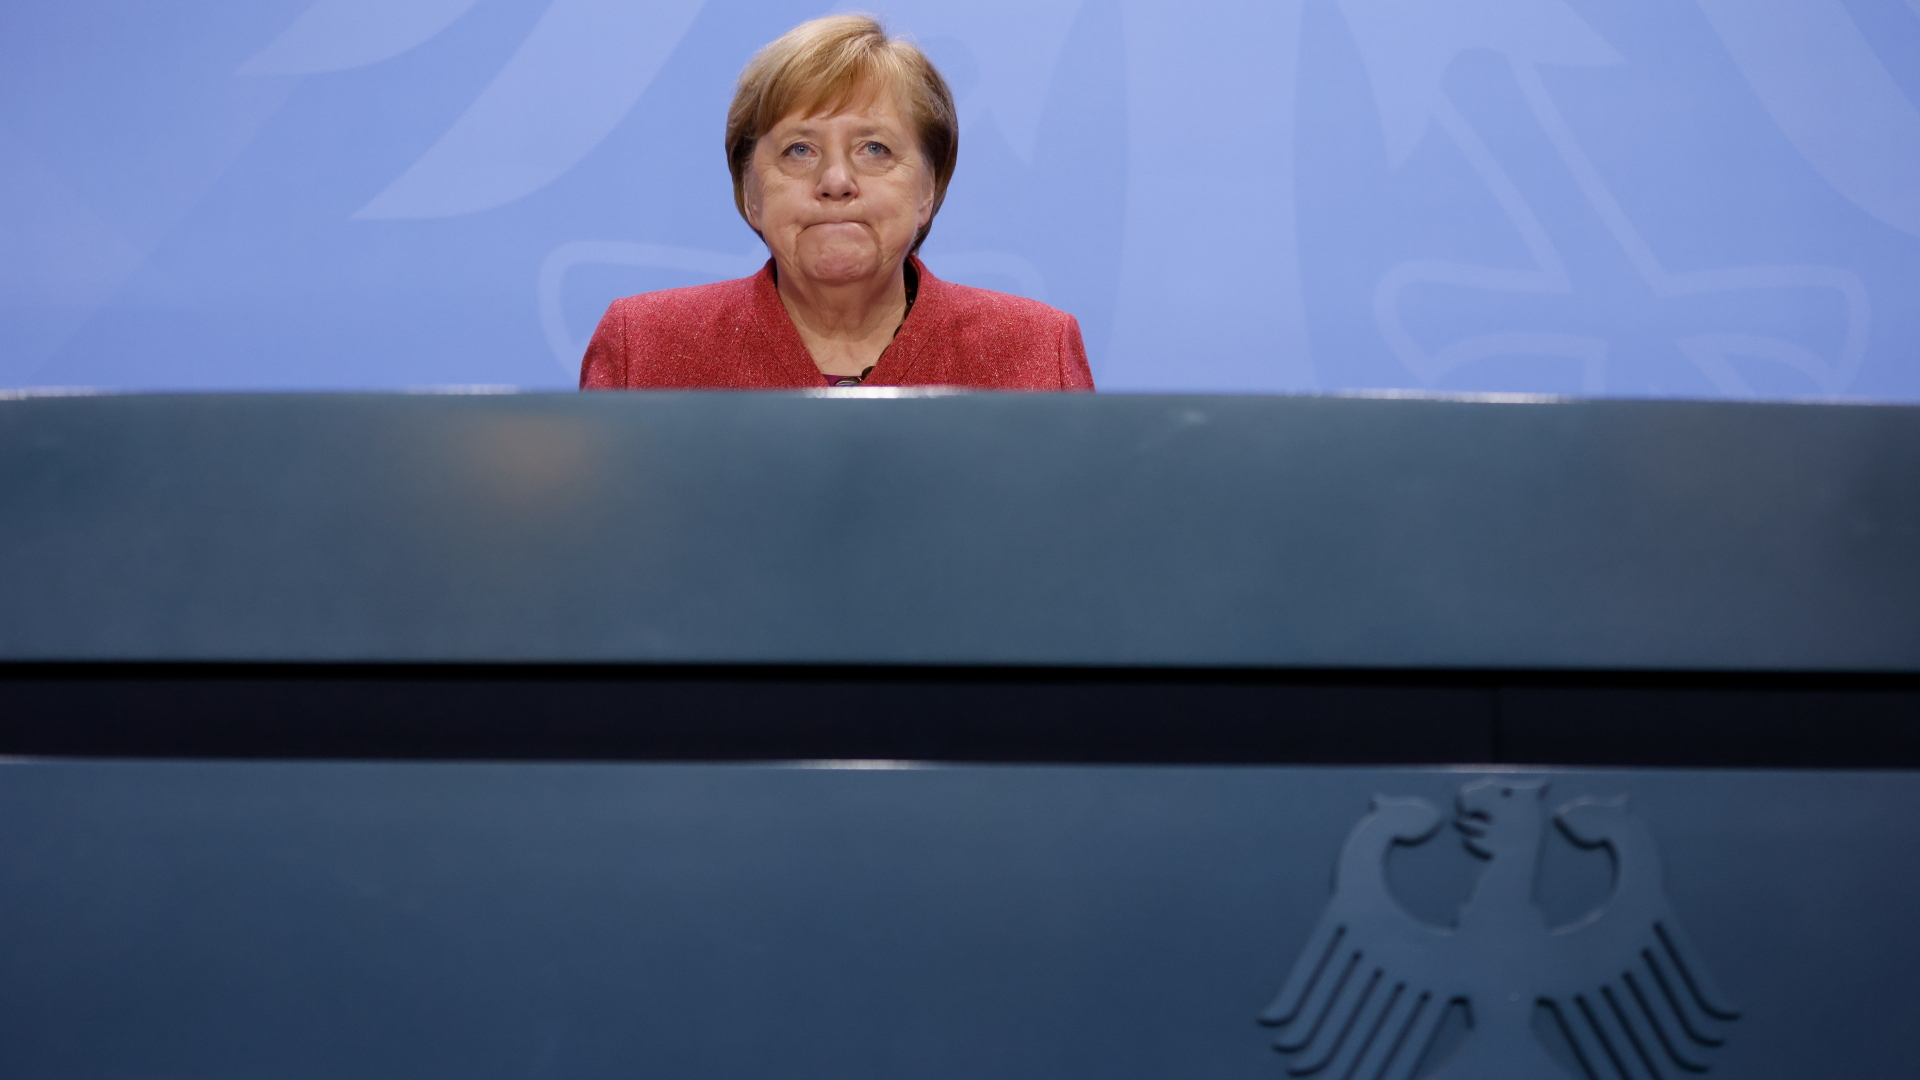 Bundeskanzlerin Angela Merkel (CDU) erläutert auf einer Pressekonferenz im Bundeskanzleramt die Ergebnisse ihres vorangegangenen Gesprächs. | dpa